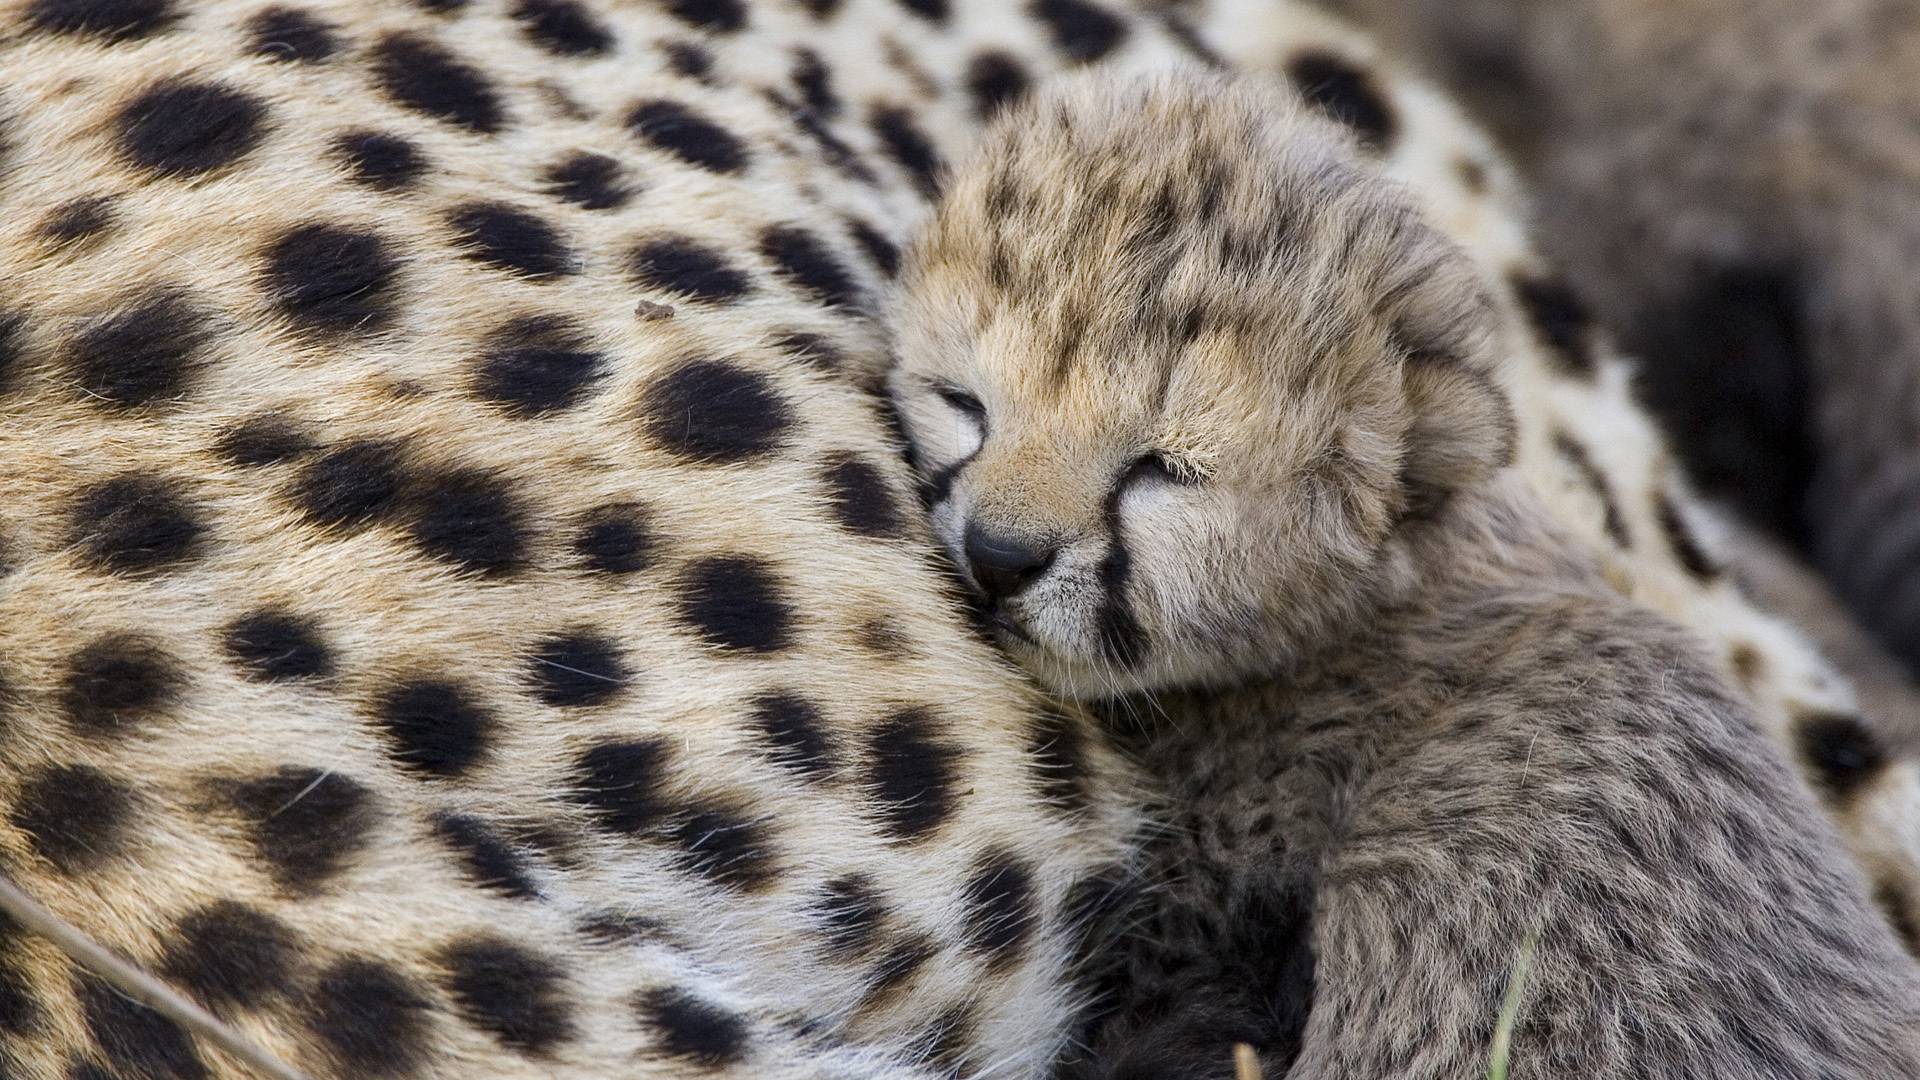 Wallpapers cheetah female kitten on the desktop